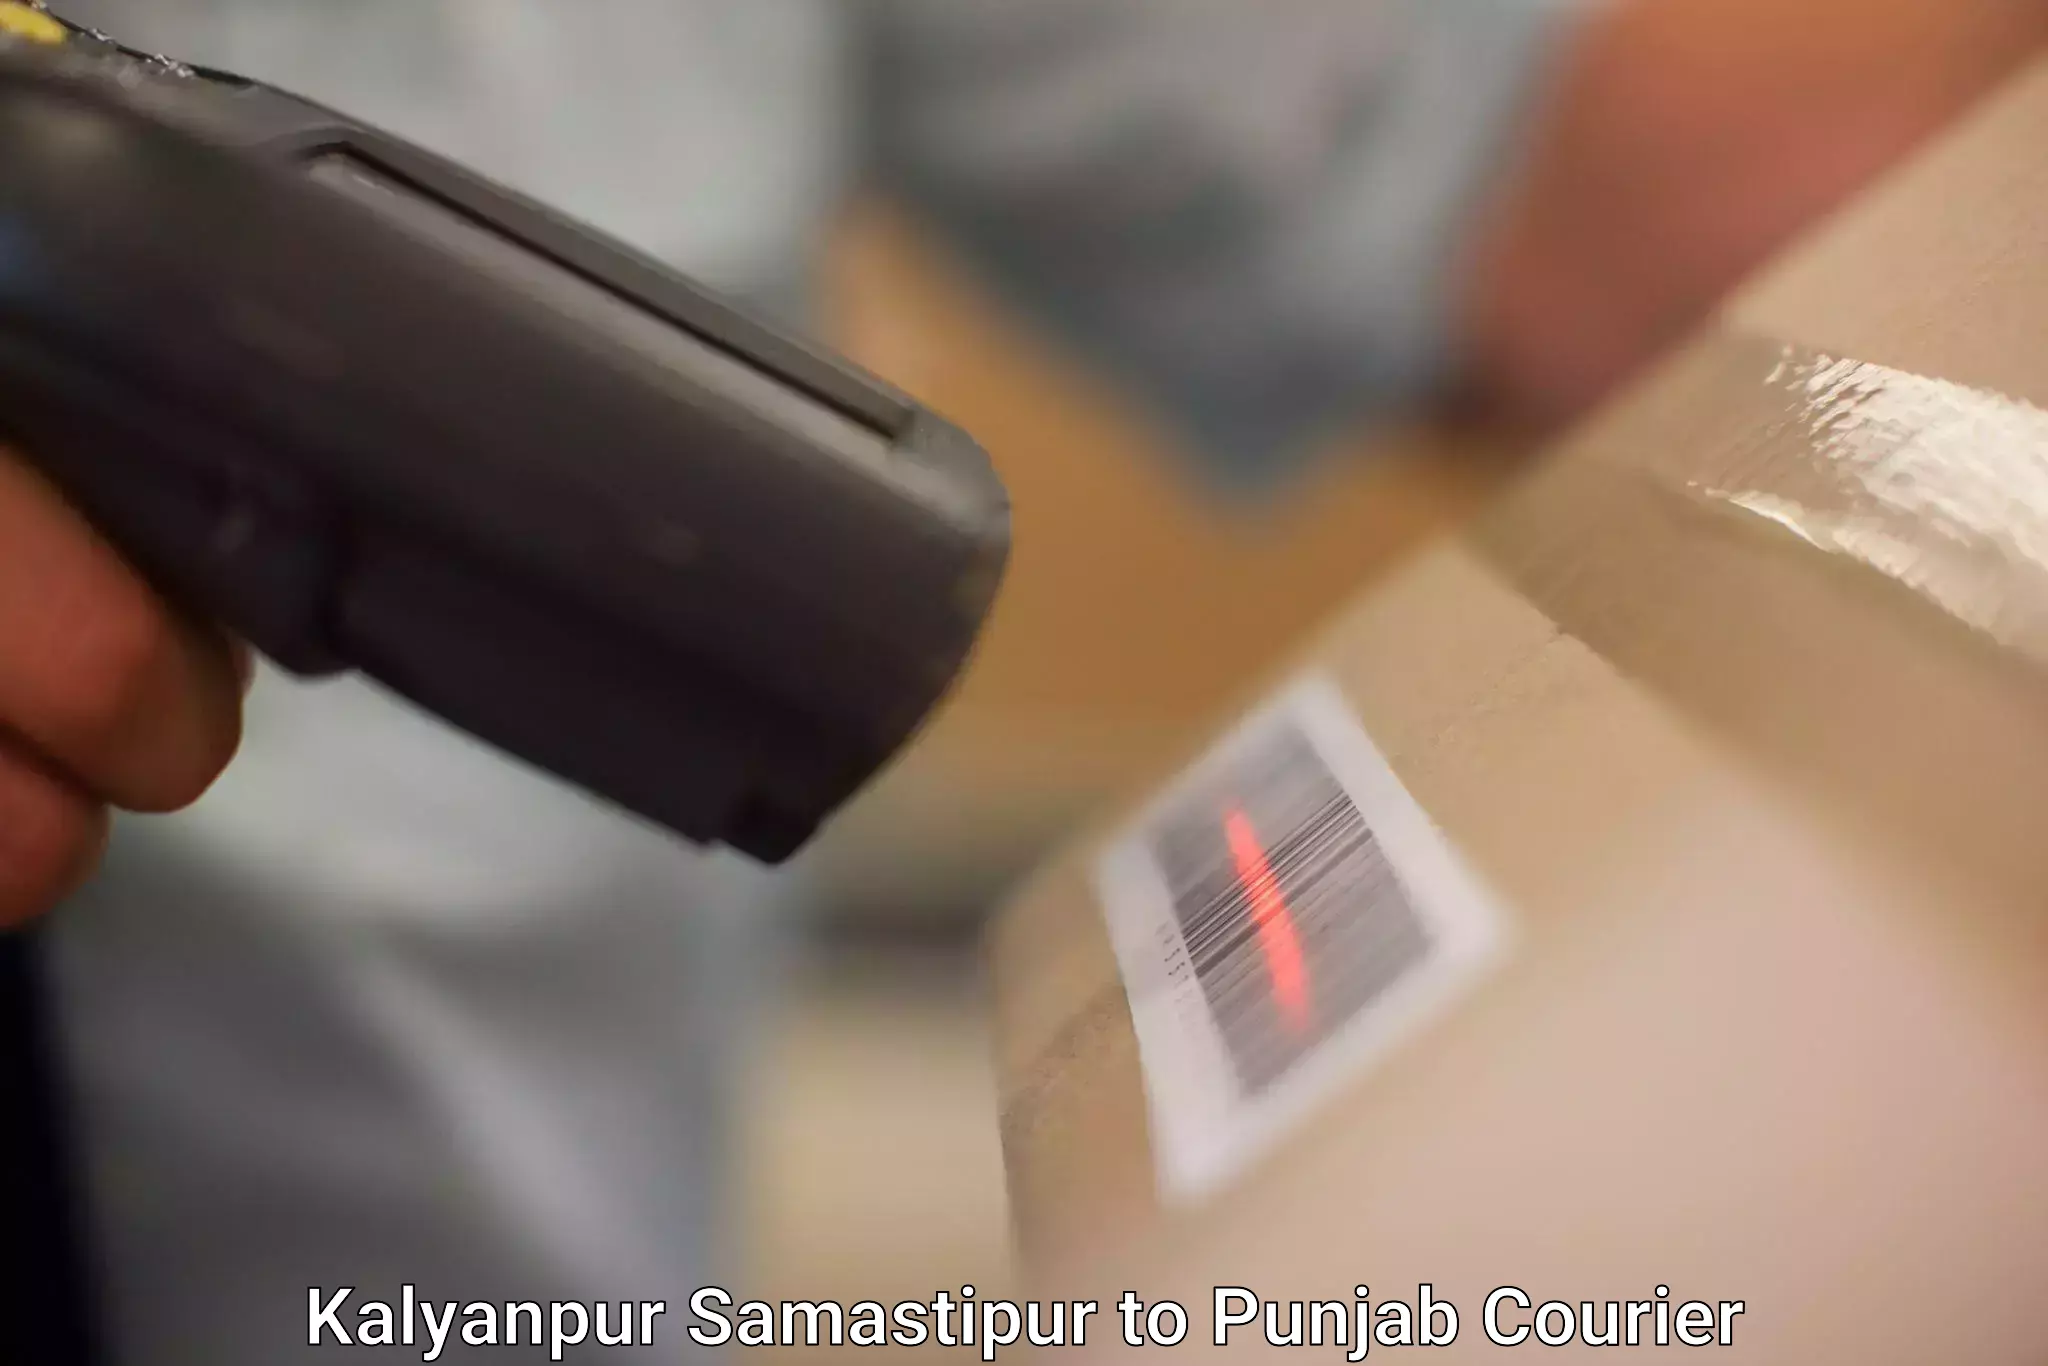 Professional courier handling Kalyanpur Samastipur to Dharamkot